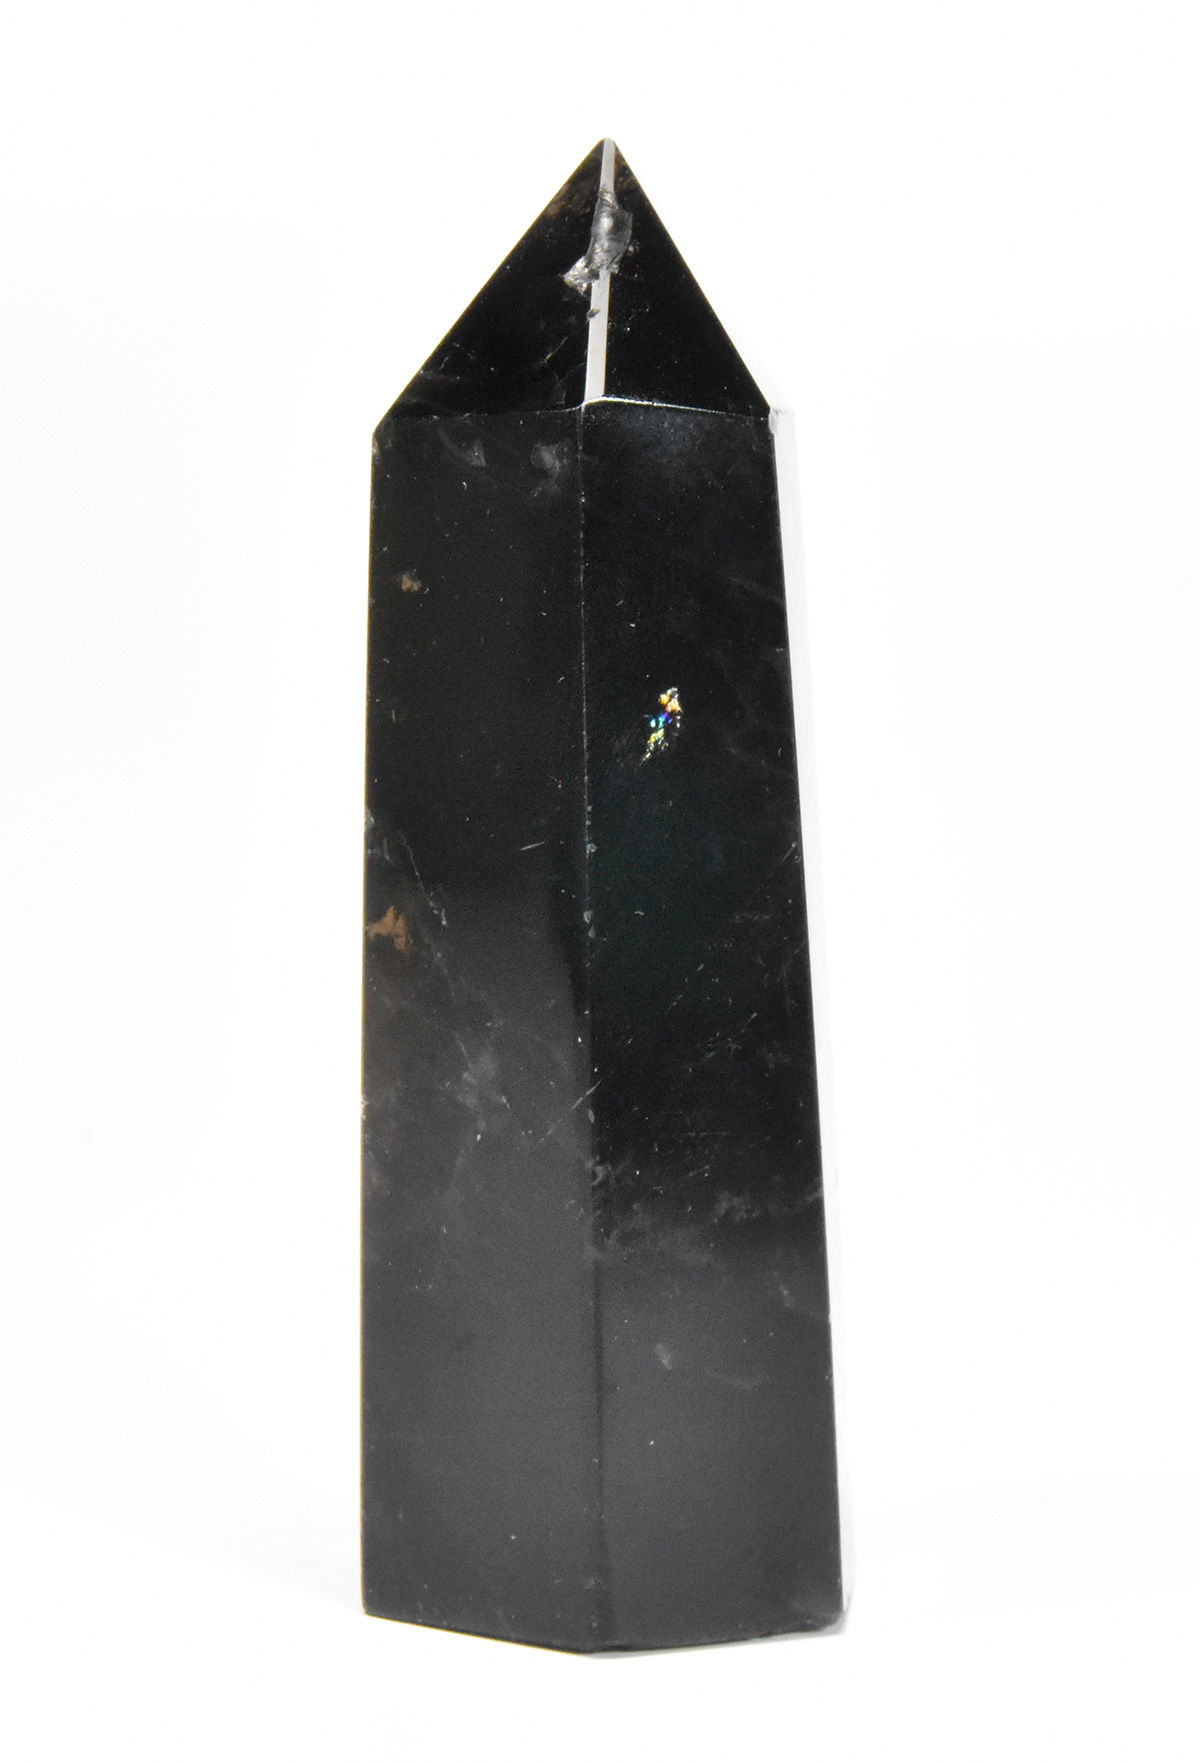 モリオン（黒水晶）ポイント K1363